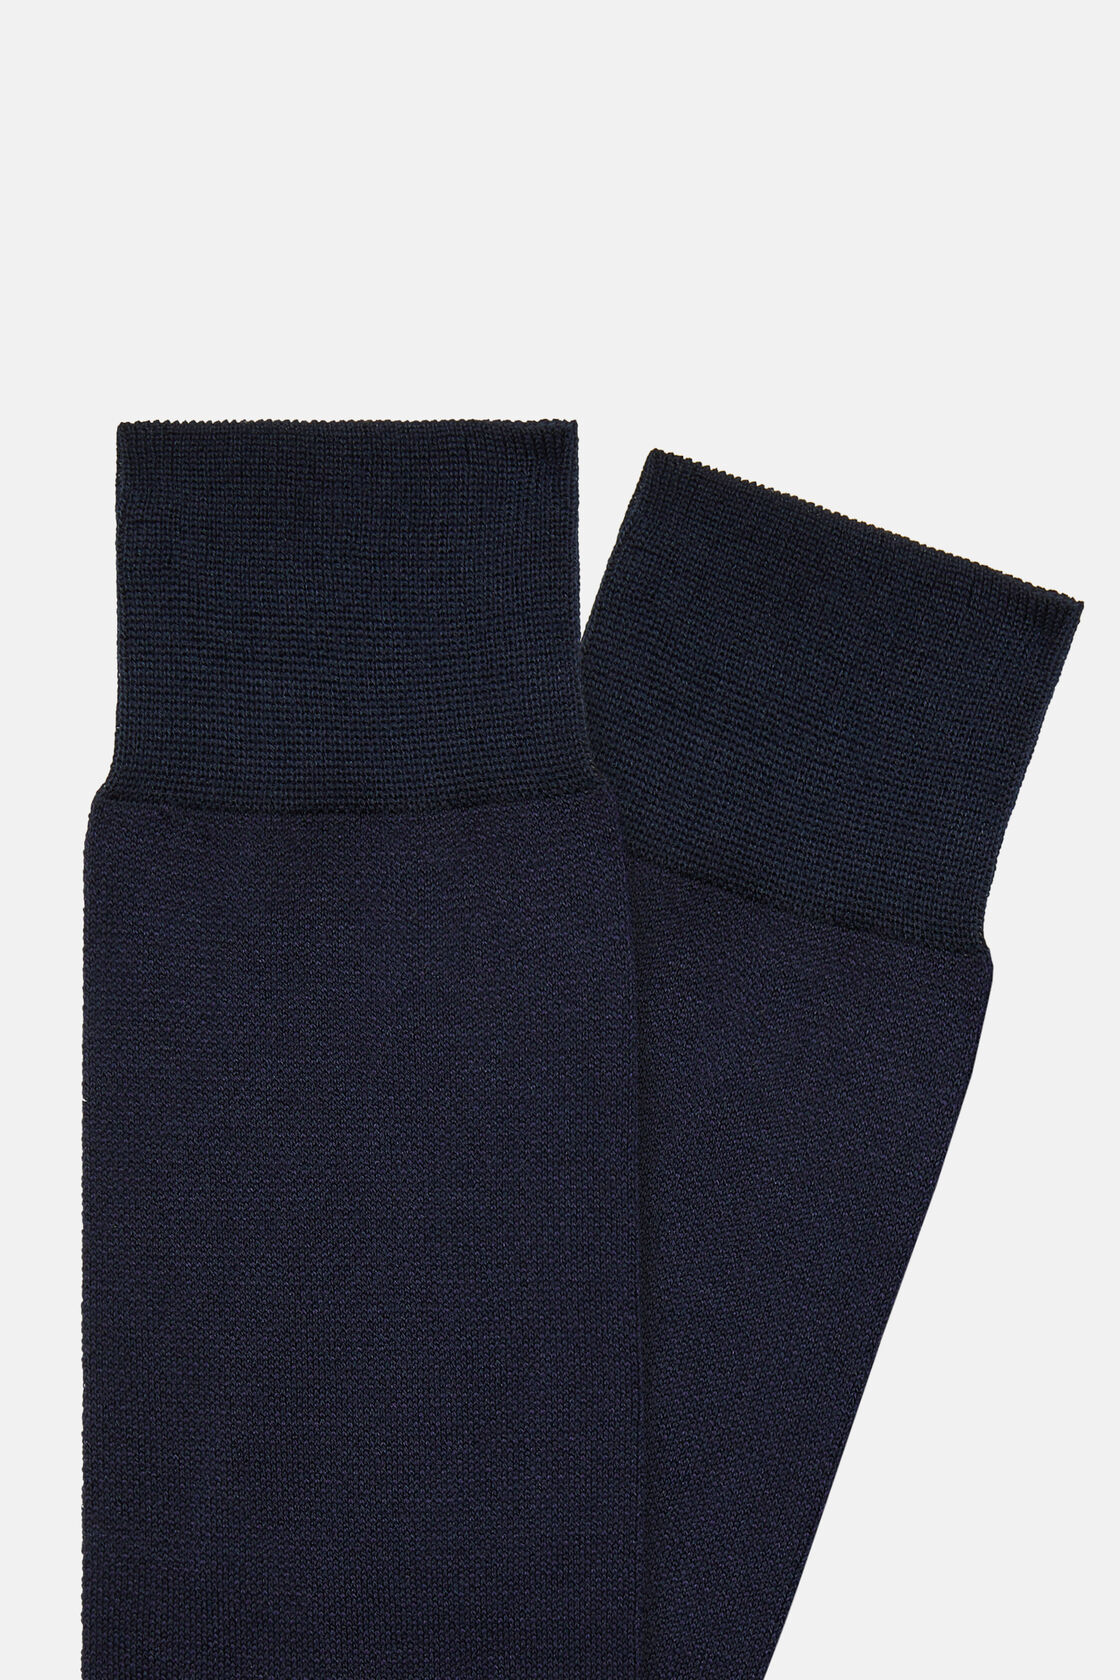 Skarpetki z bawełny Oxford, Navy blue, hi-res